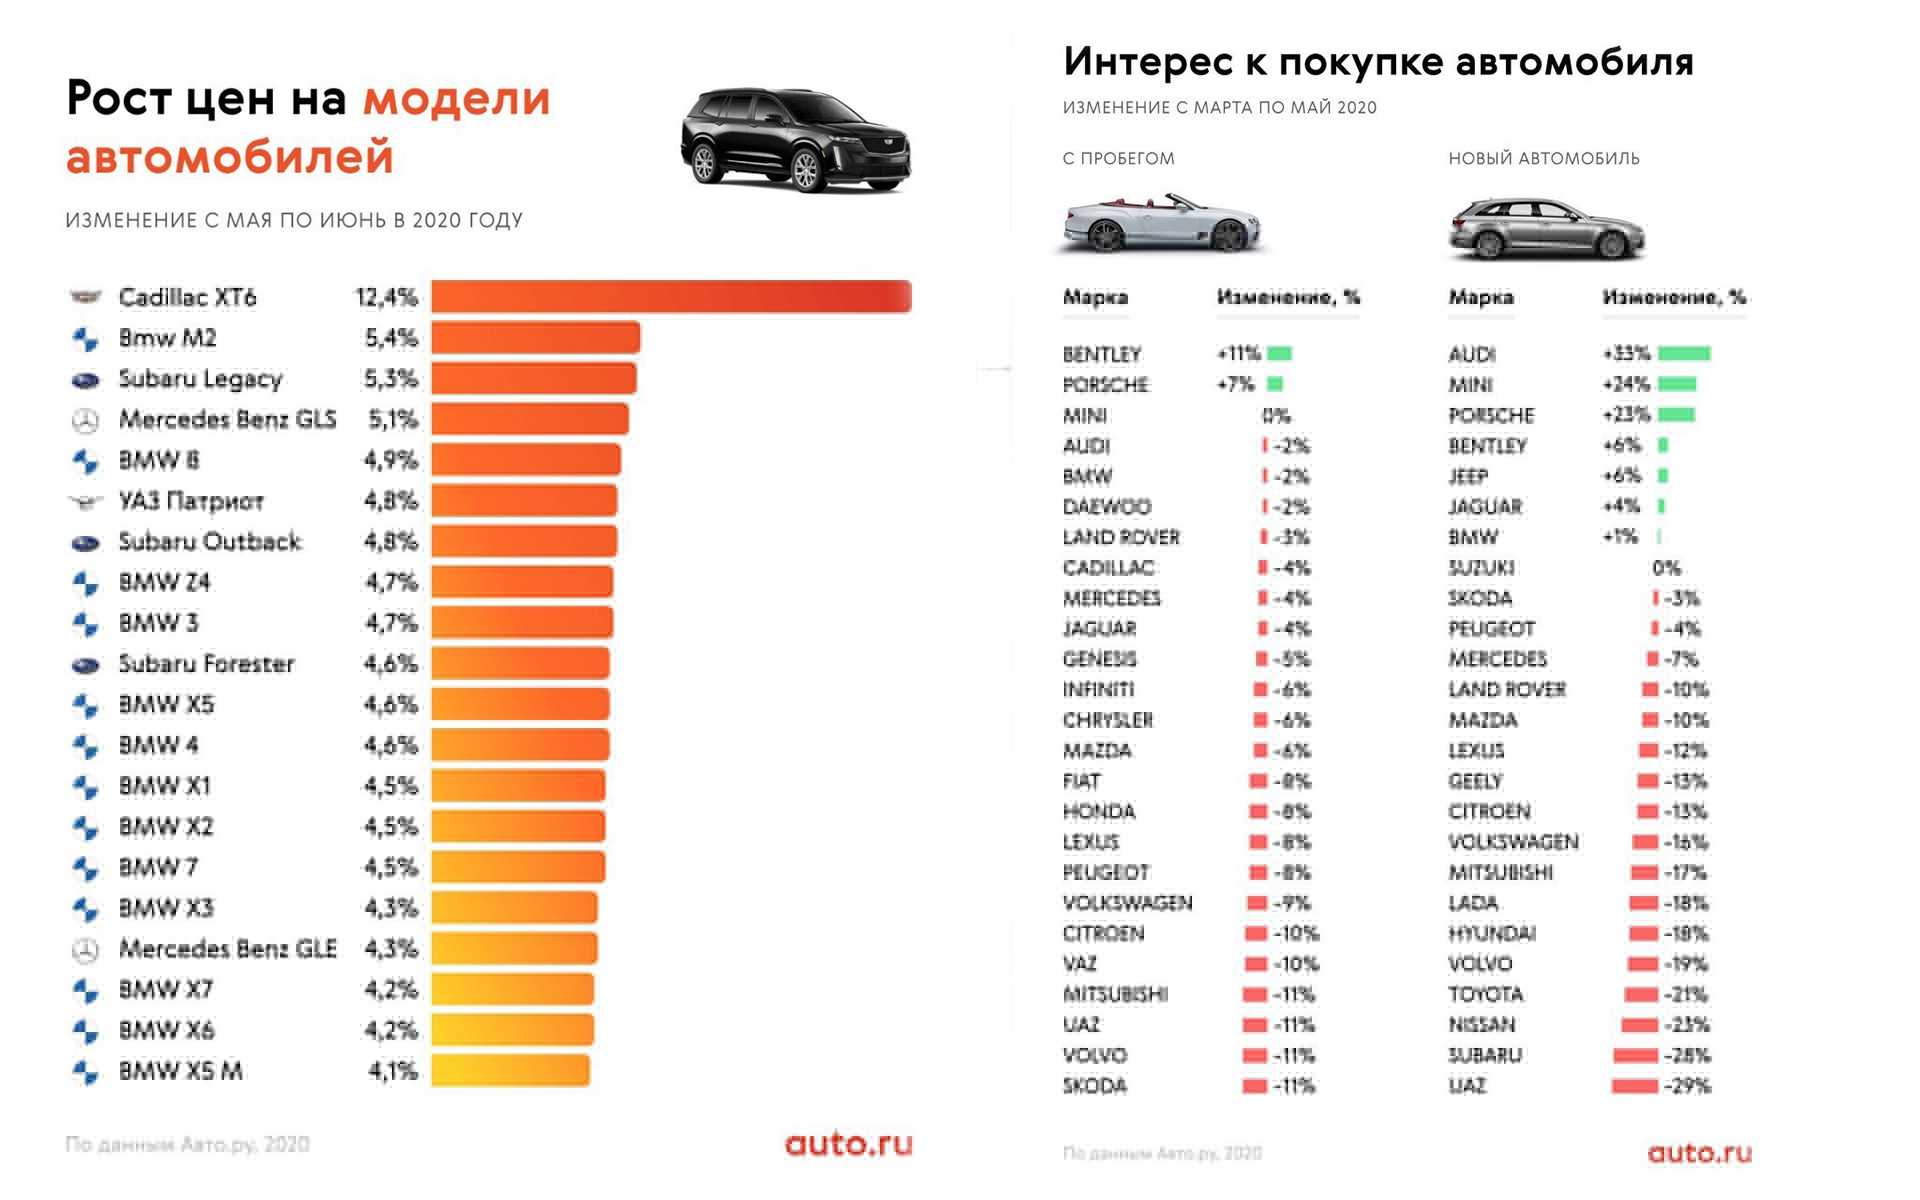 Весь модельный ряд коммерческих автомобилей Citroen:  новых в РФ, перечень технических характеристик, обзоры с фото и отзывами владельцев